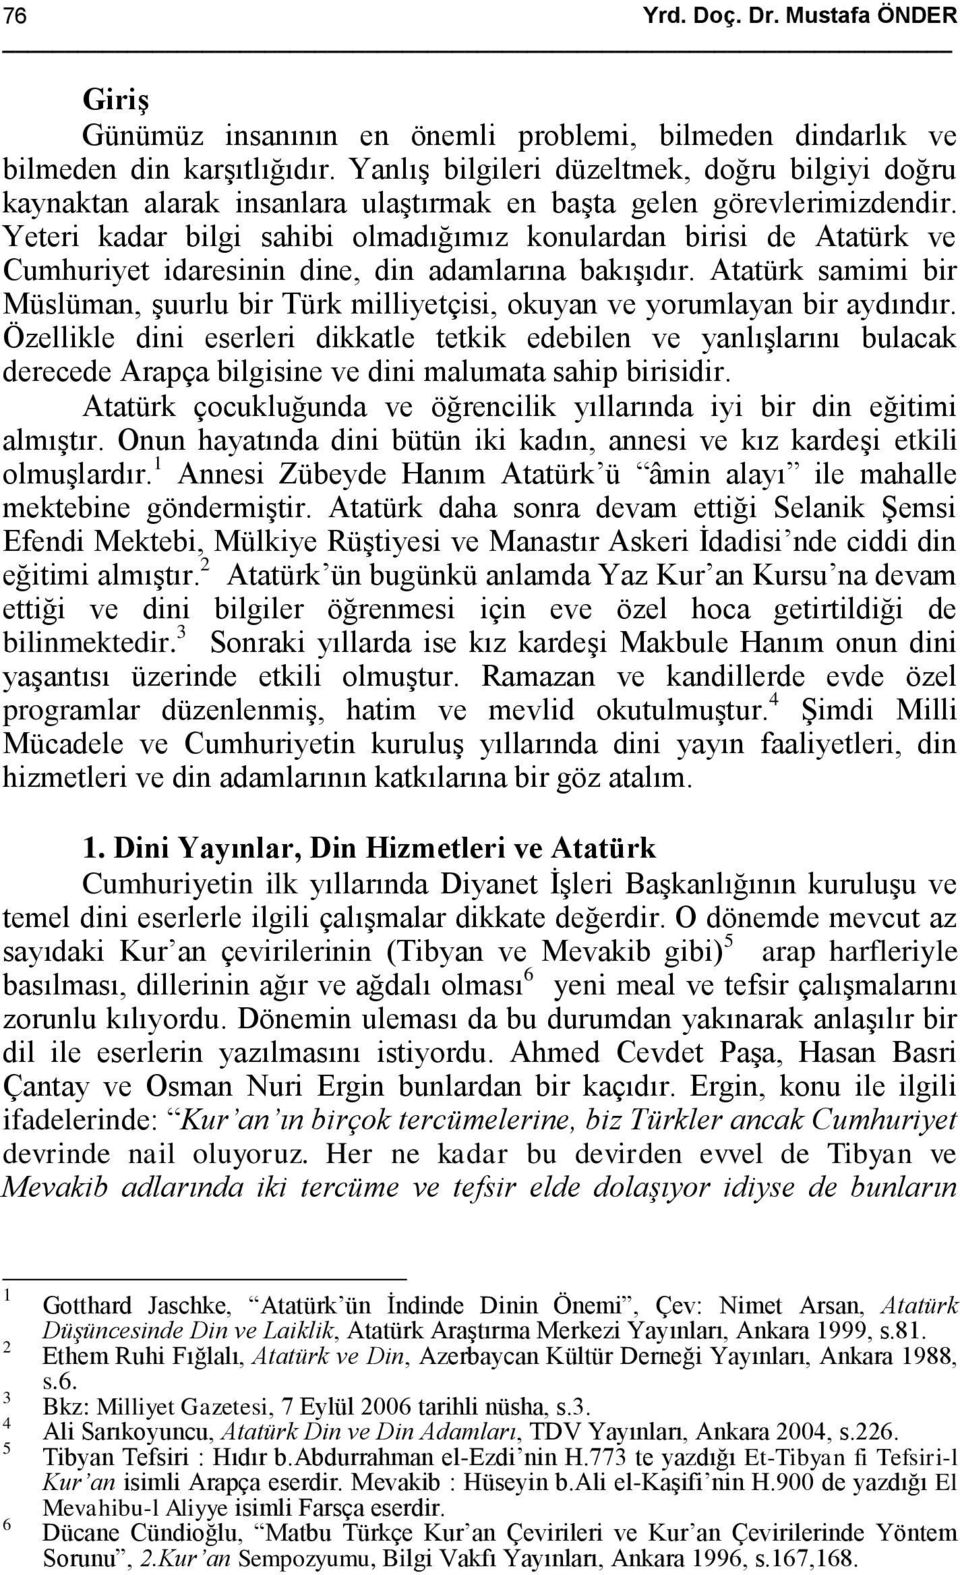 Yeteri kadar bilgi sahibi olmadığımız konulardan birisi de Atatürk ve Cumhuriyet idaresinin dine, din adamlarına bakışıdır.